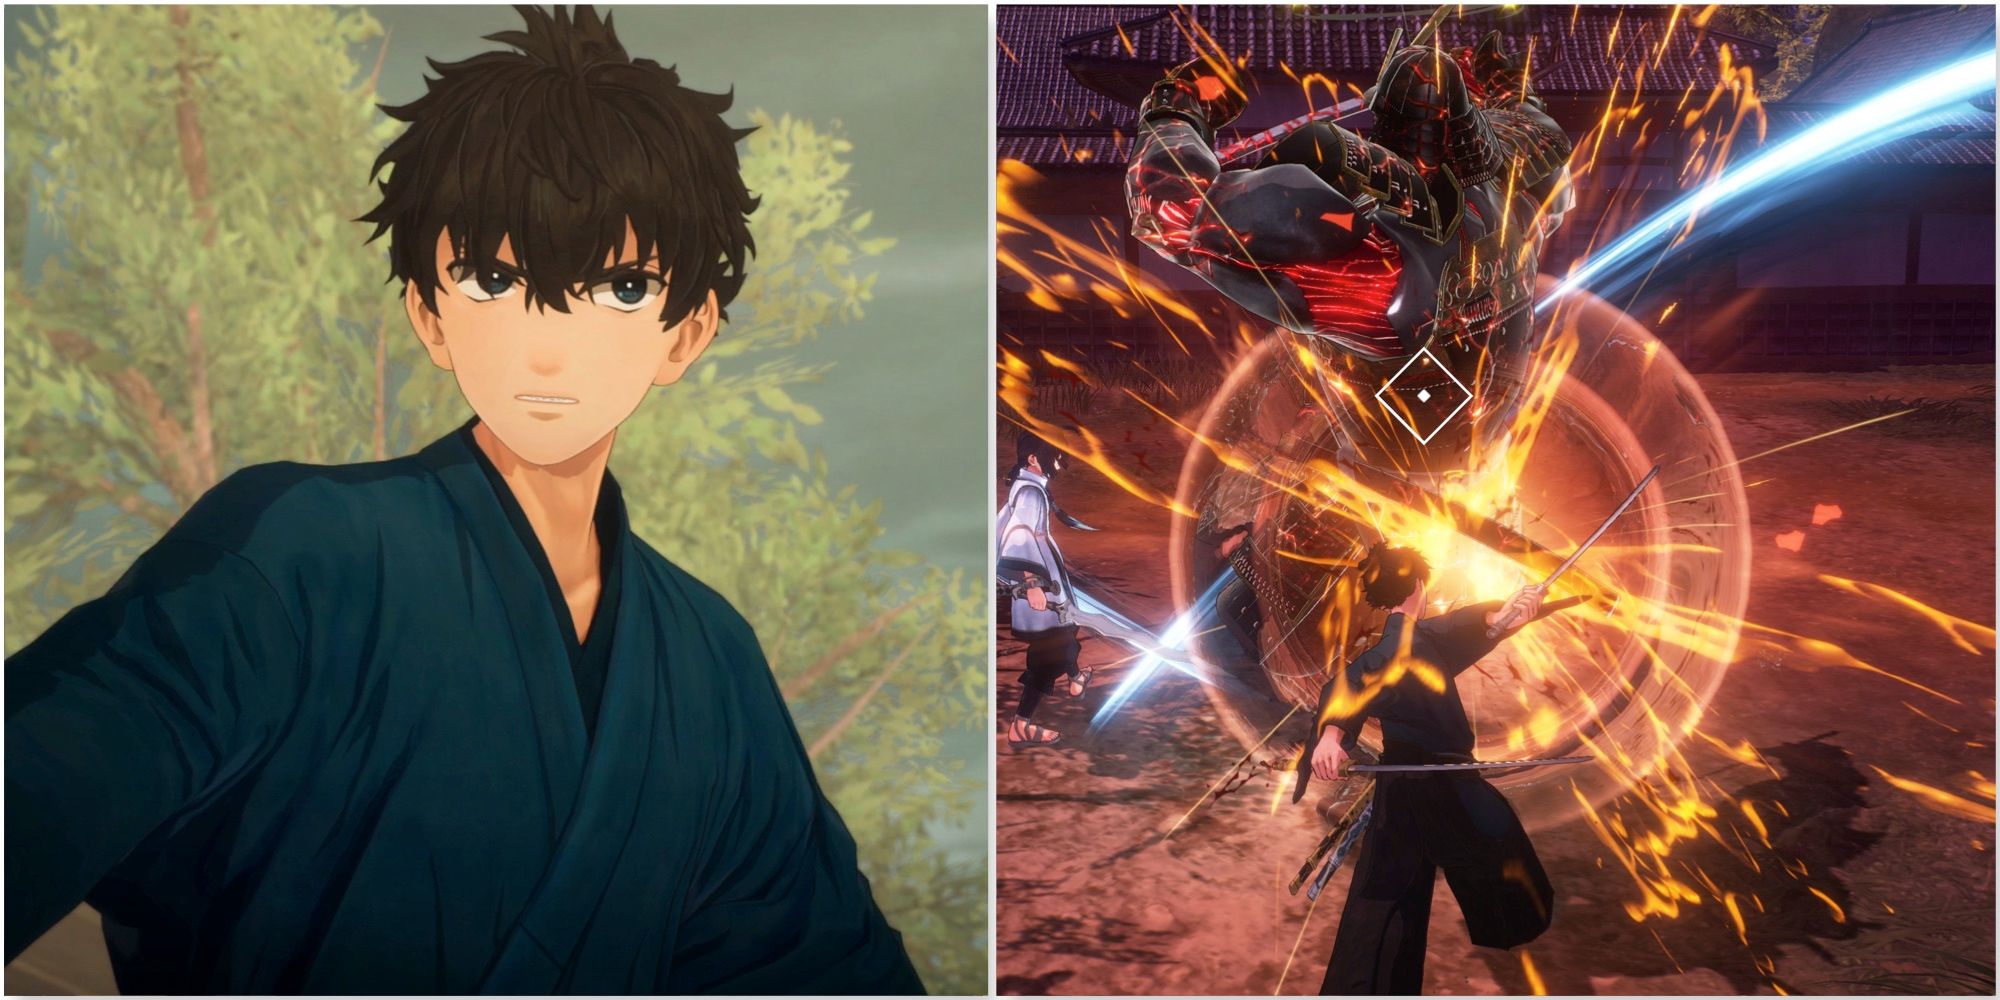 Iori and fighting enemies in Fate:Samurai Remnant